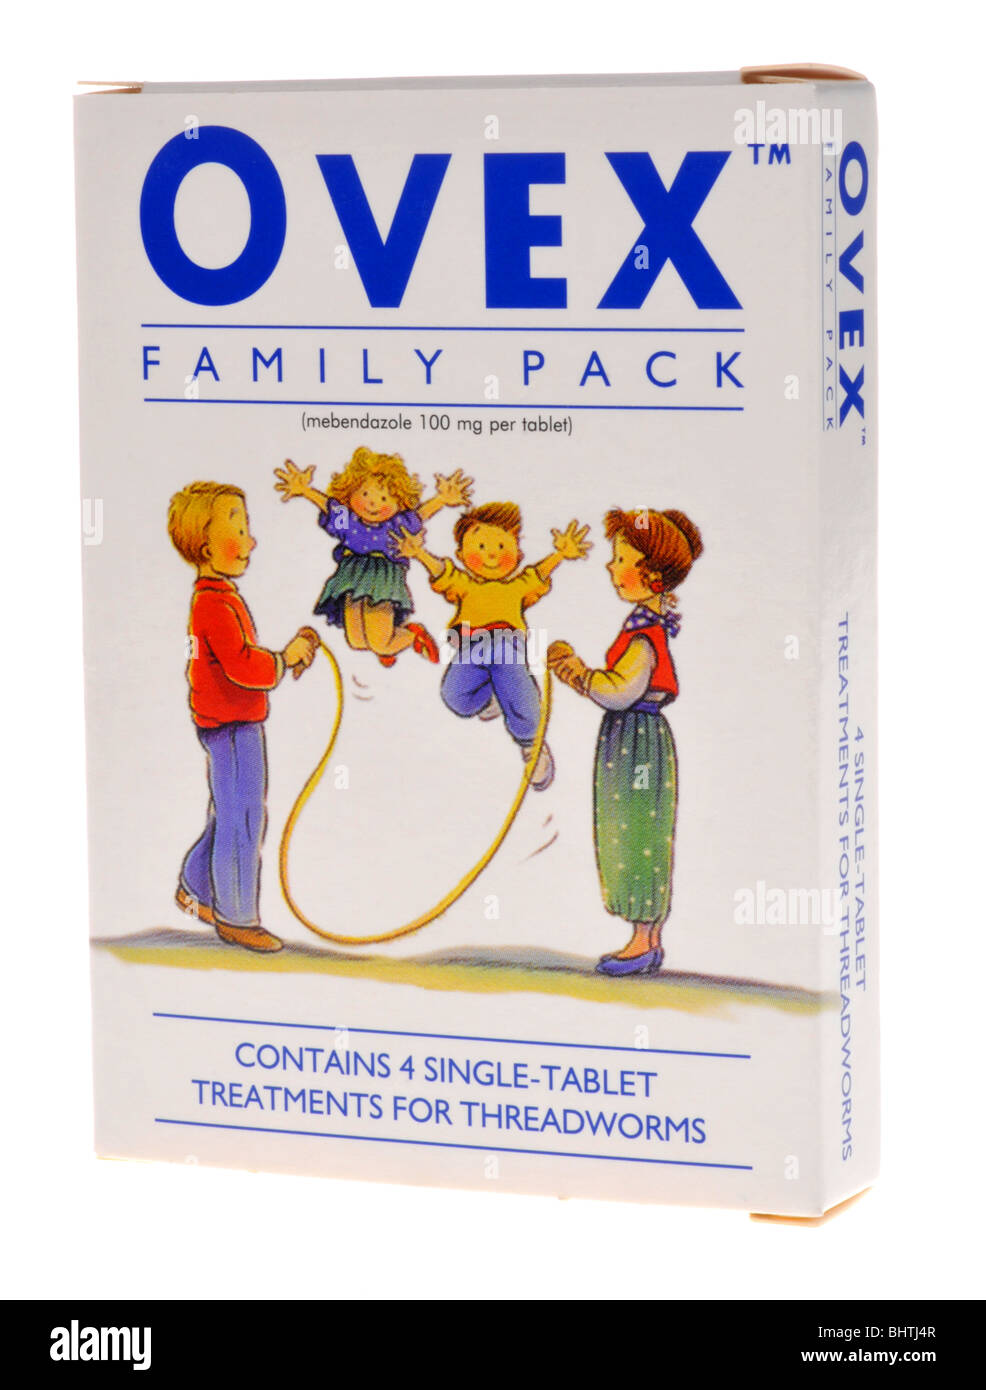 Ovex Tabletten zur Behandlung von Fadenwurm oder Madenwürmer  Stockfotografie - Alamy